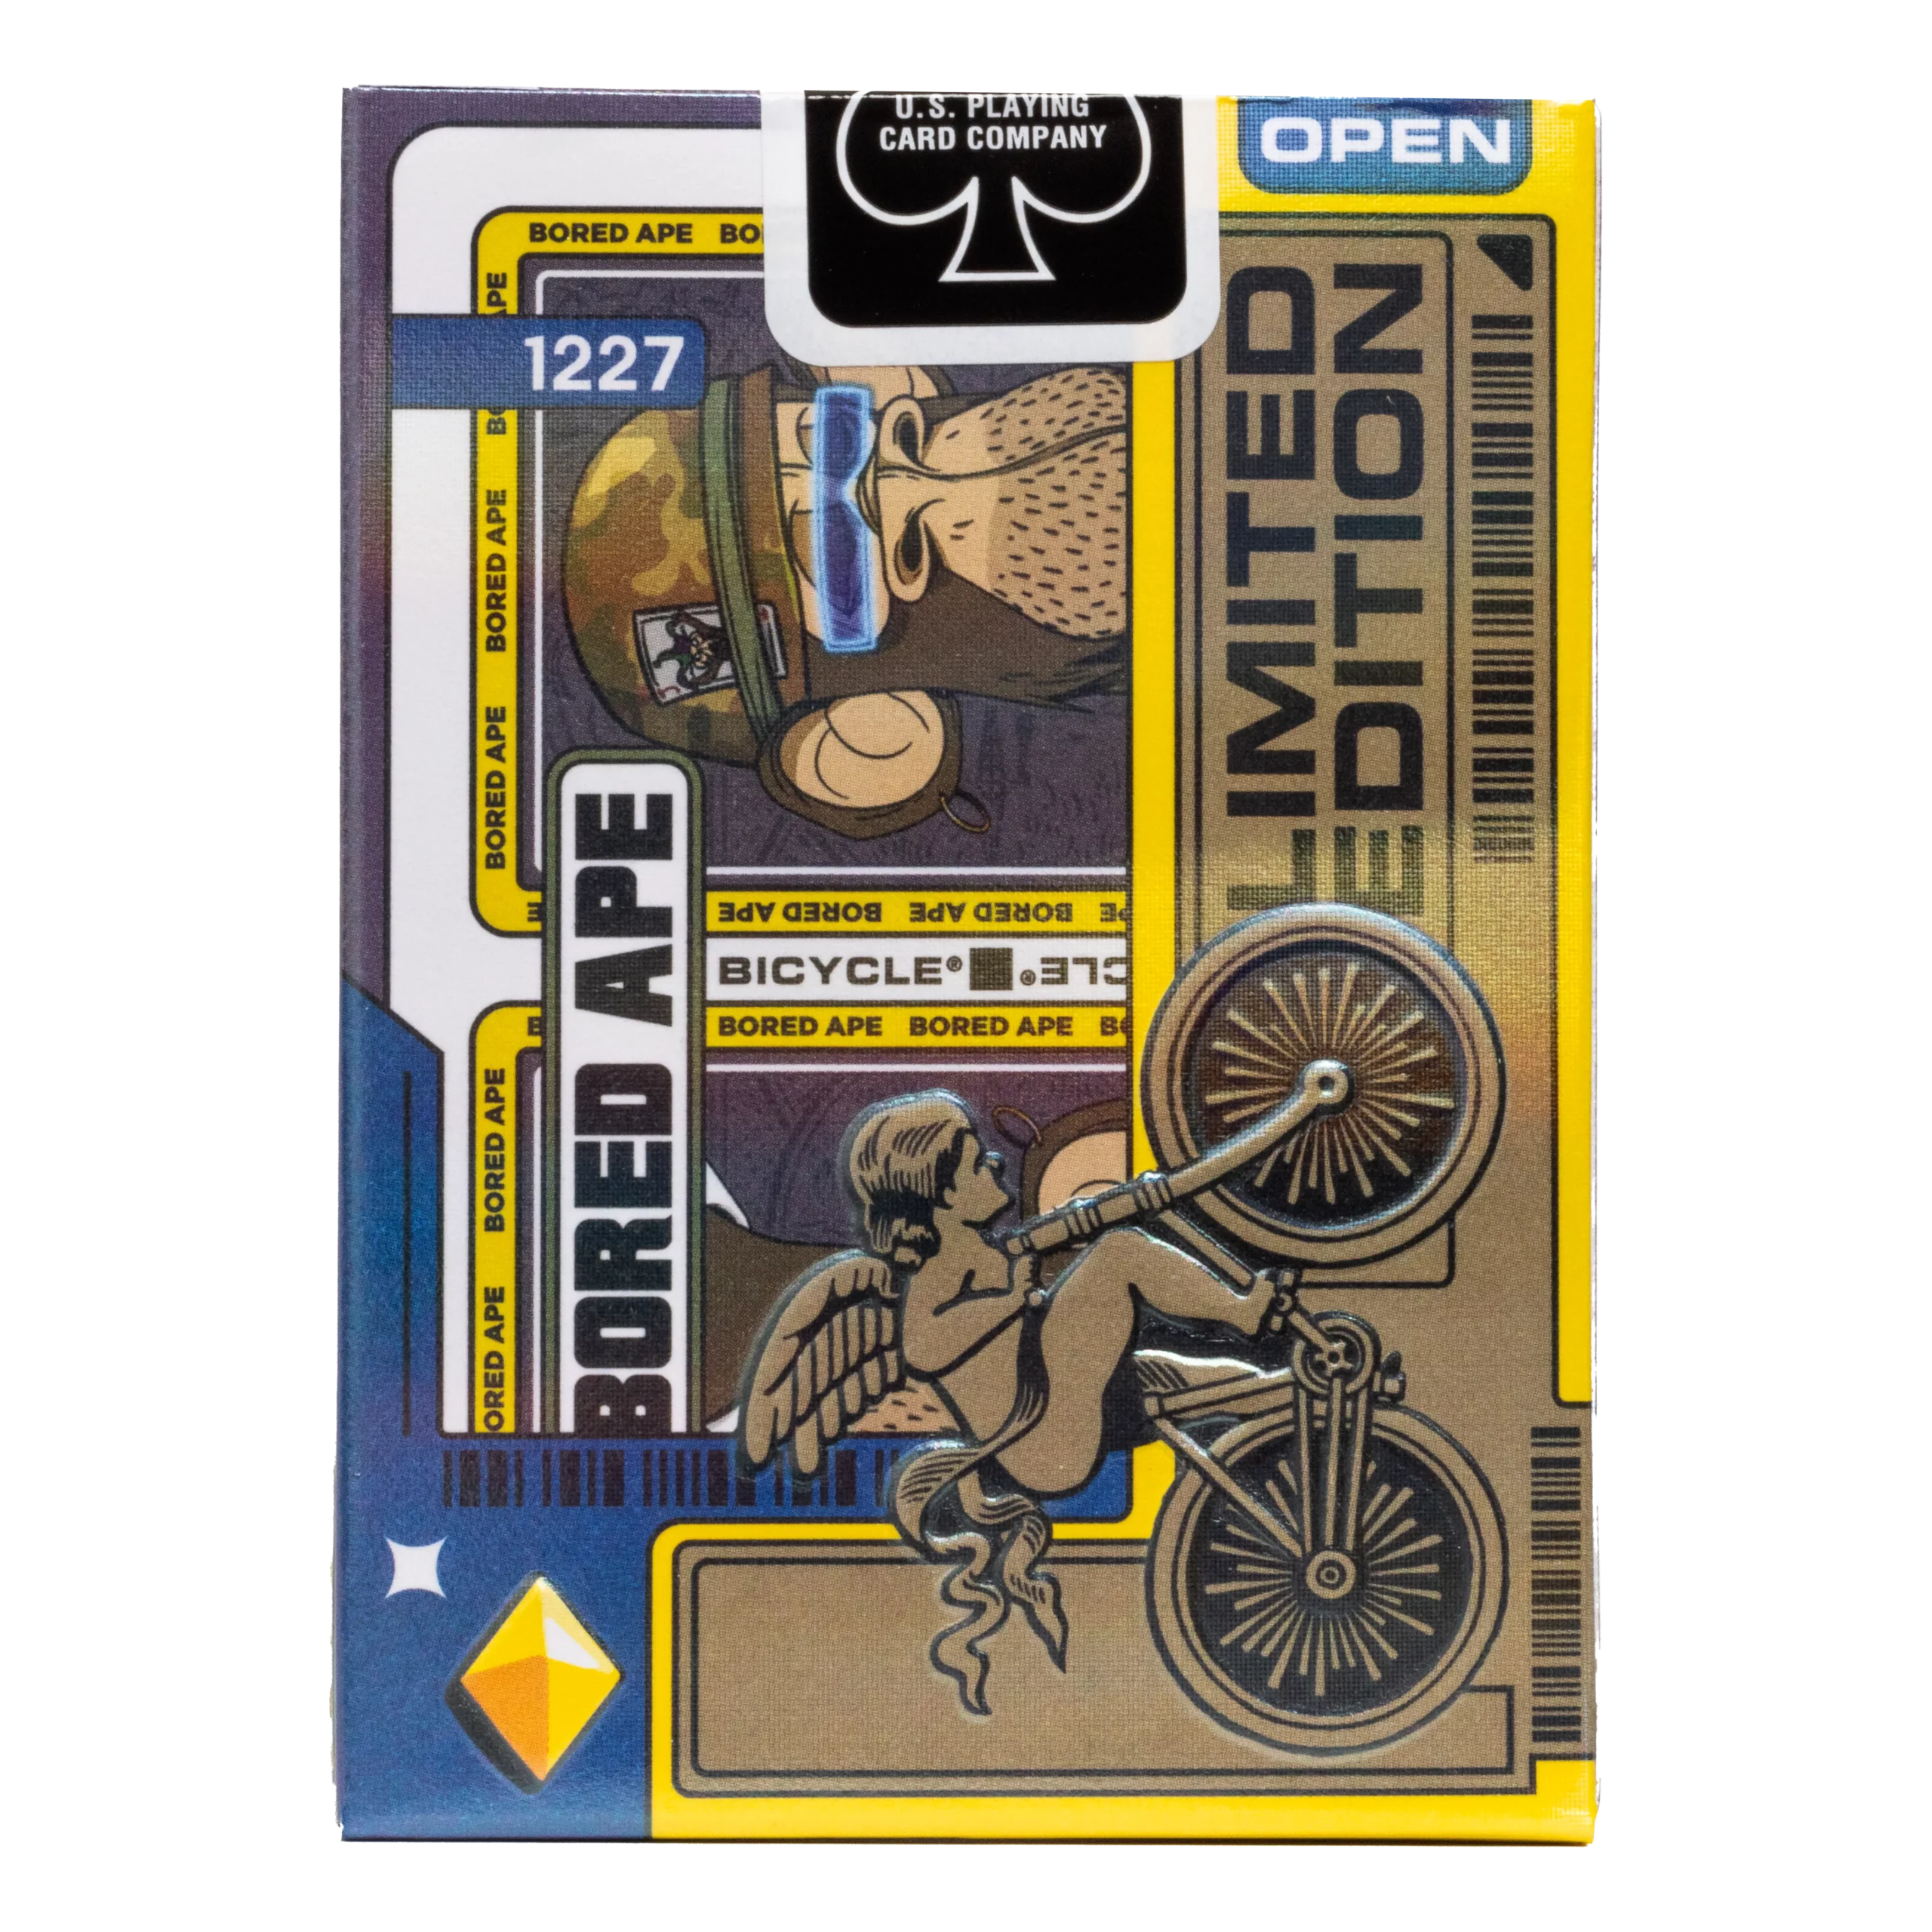 Eine Bicycle Ultimate Bicycle Bored Ape Special Edition Kartenschachtel steht mit sichtbarer Rückseite vor einem weißem Hintergrund.